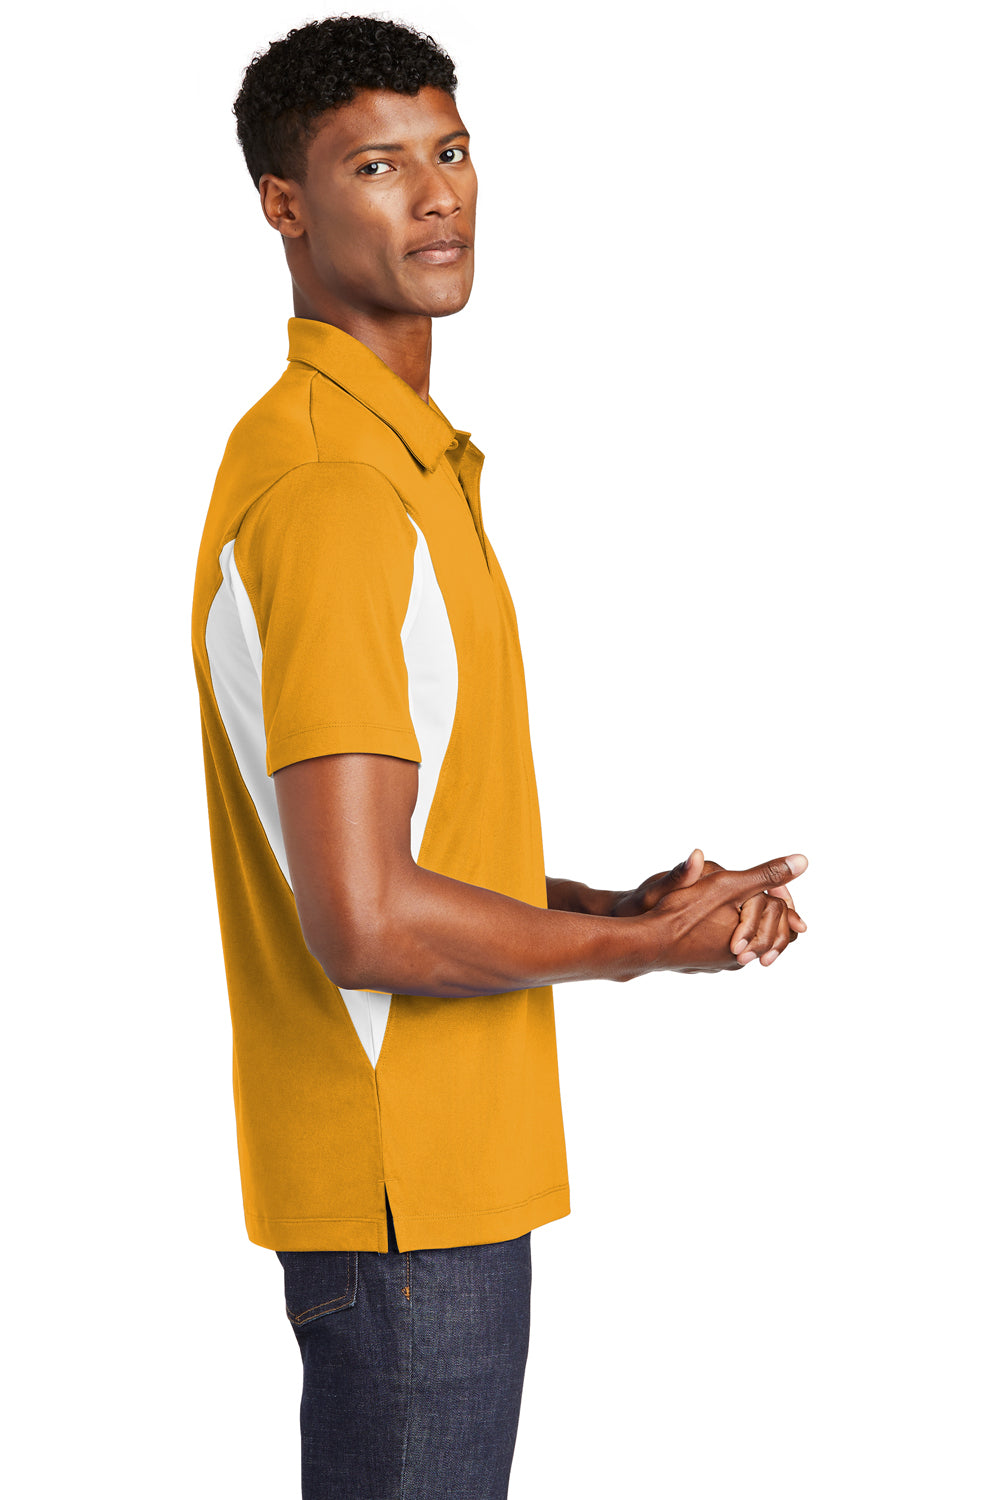 Sport-Tek ST655 Mens Sport-Wick Moisture Wicking Short Sleeve Polo Shirt Gold/White Side